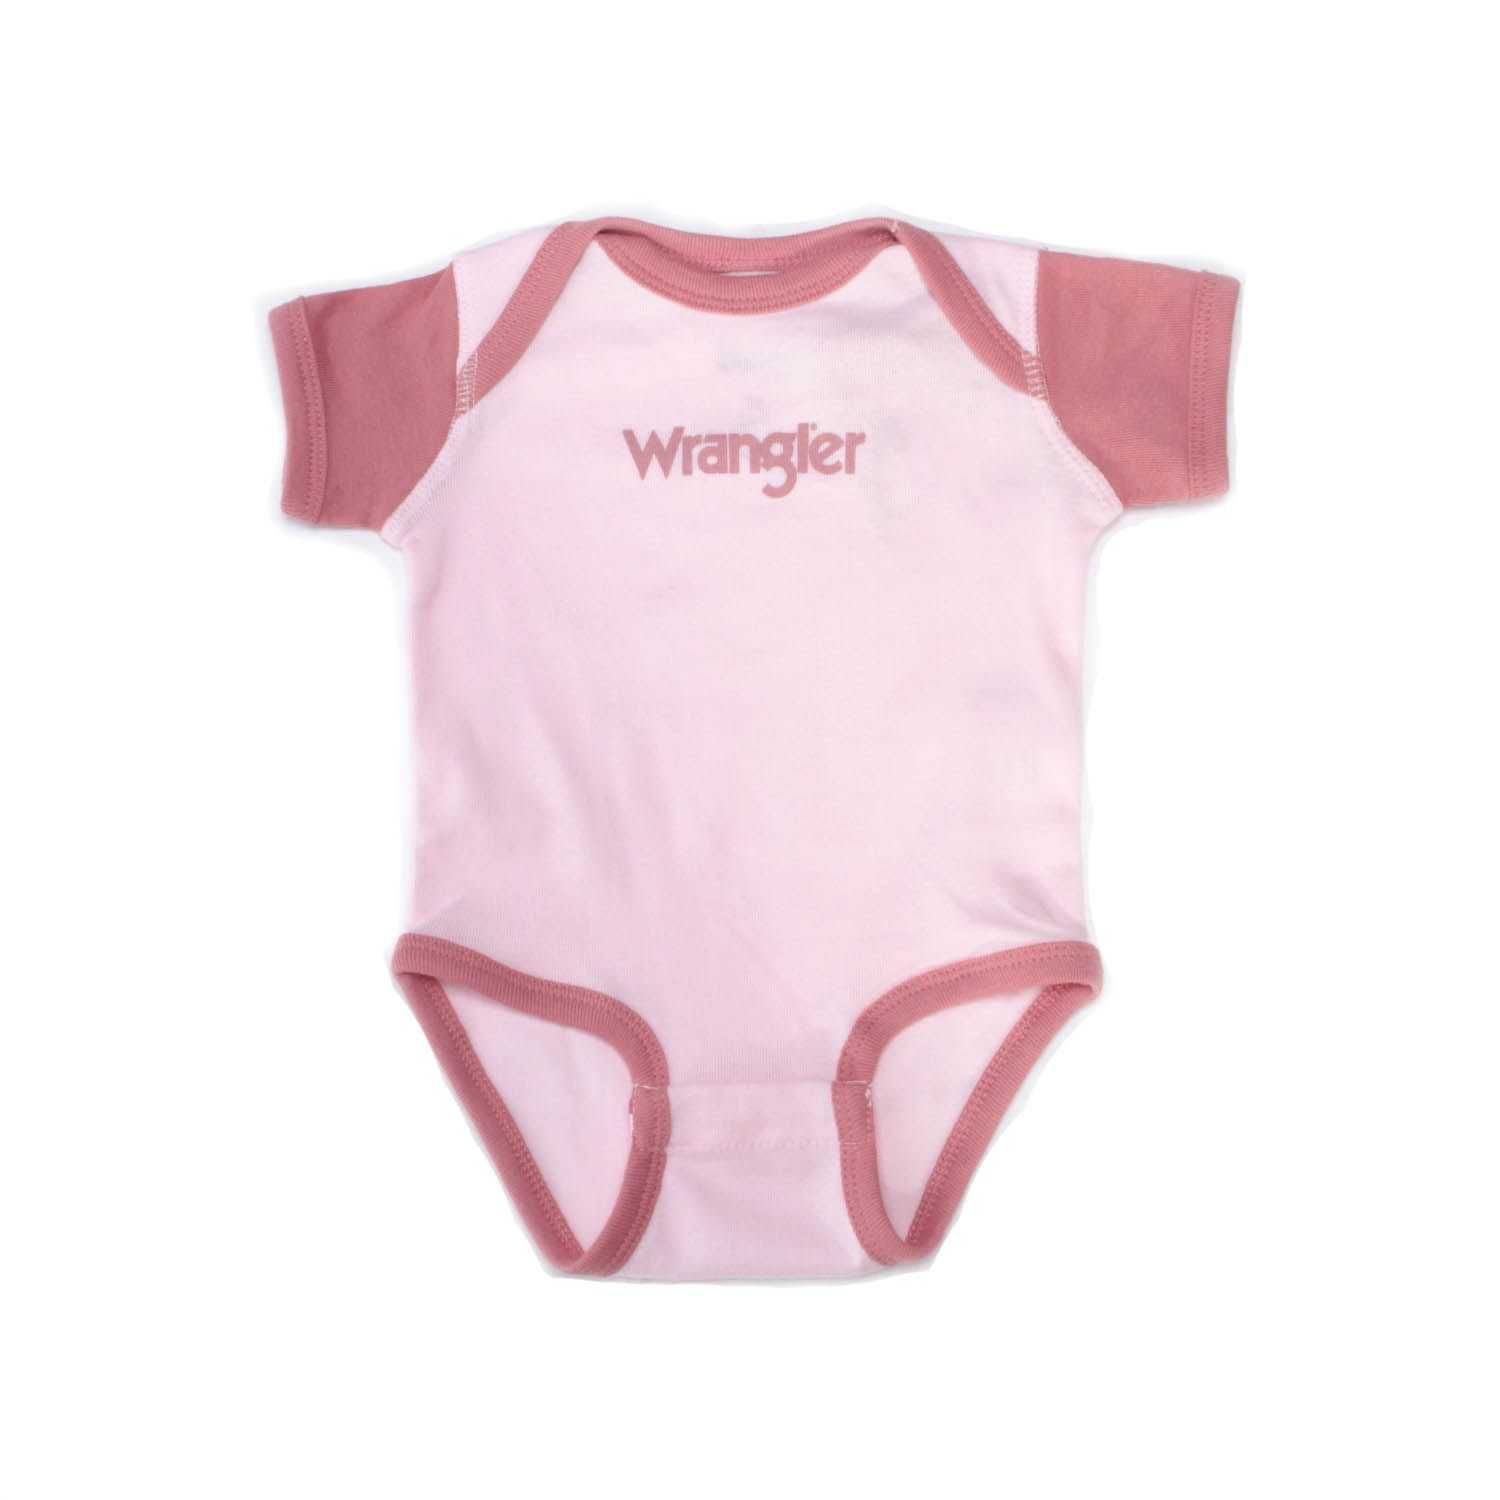 Wrangler Infant Girls Logo Baby Pink Onesie